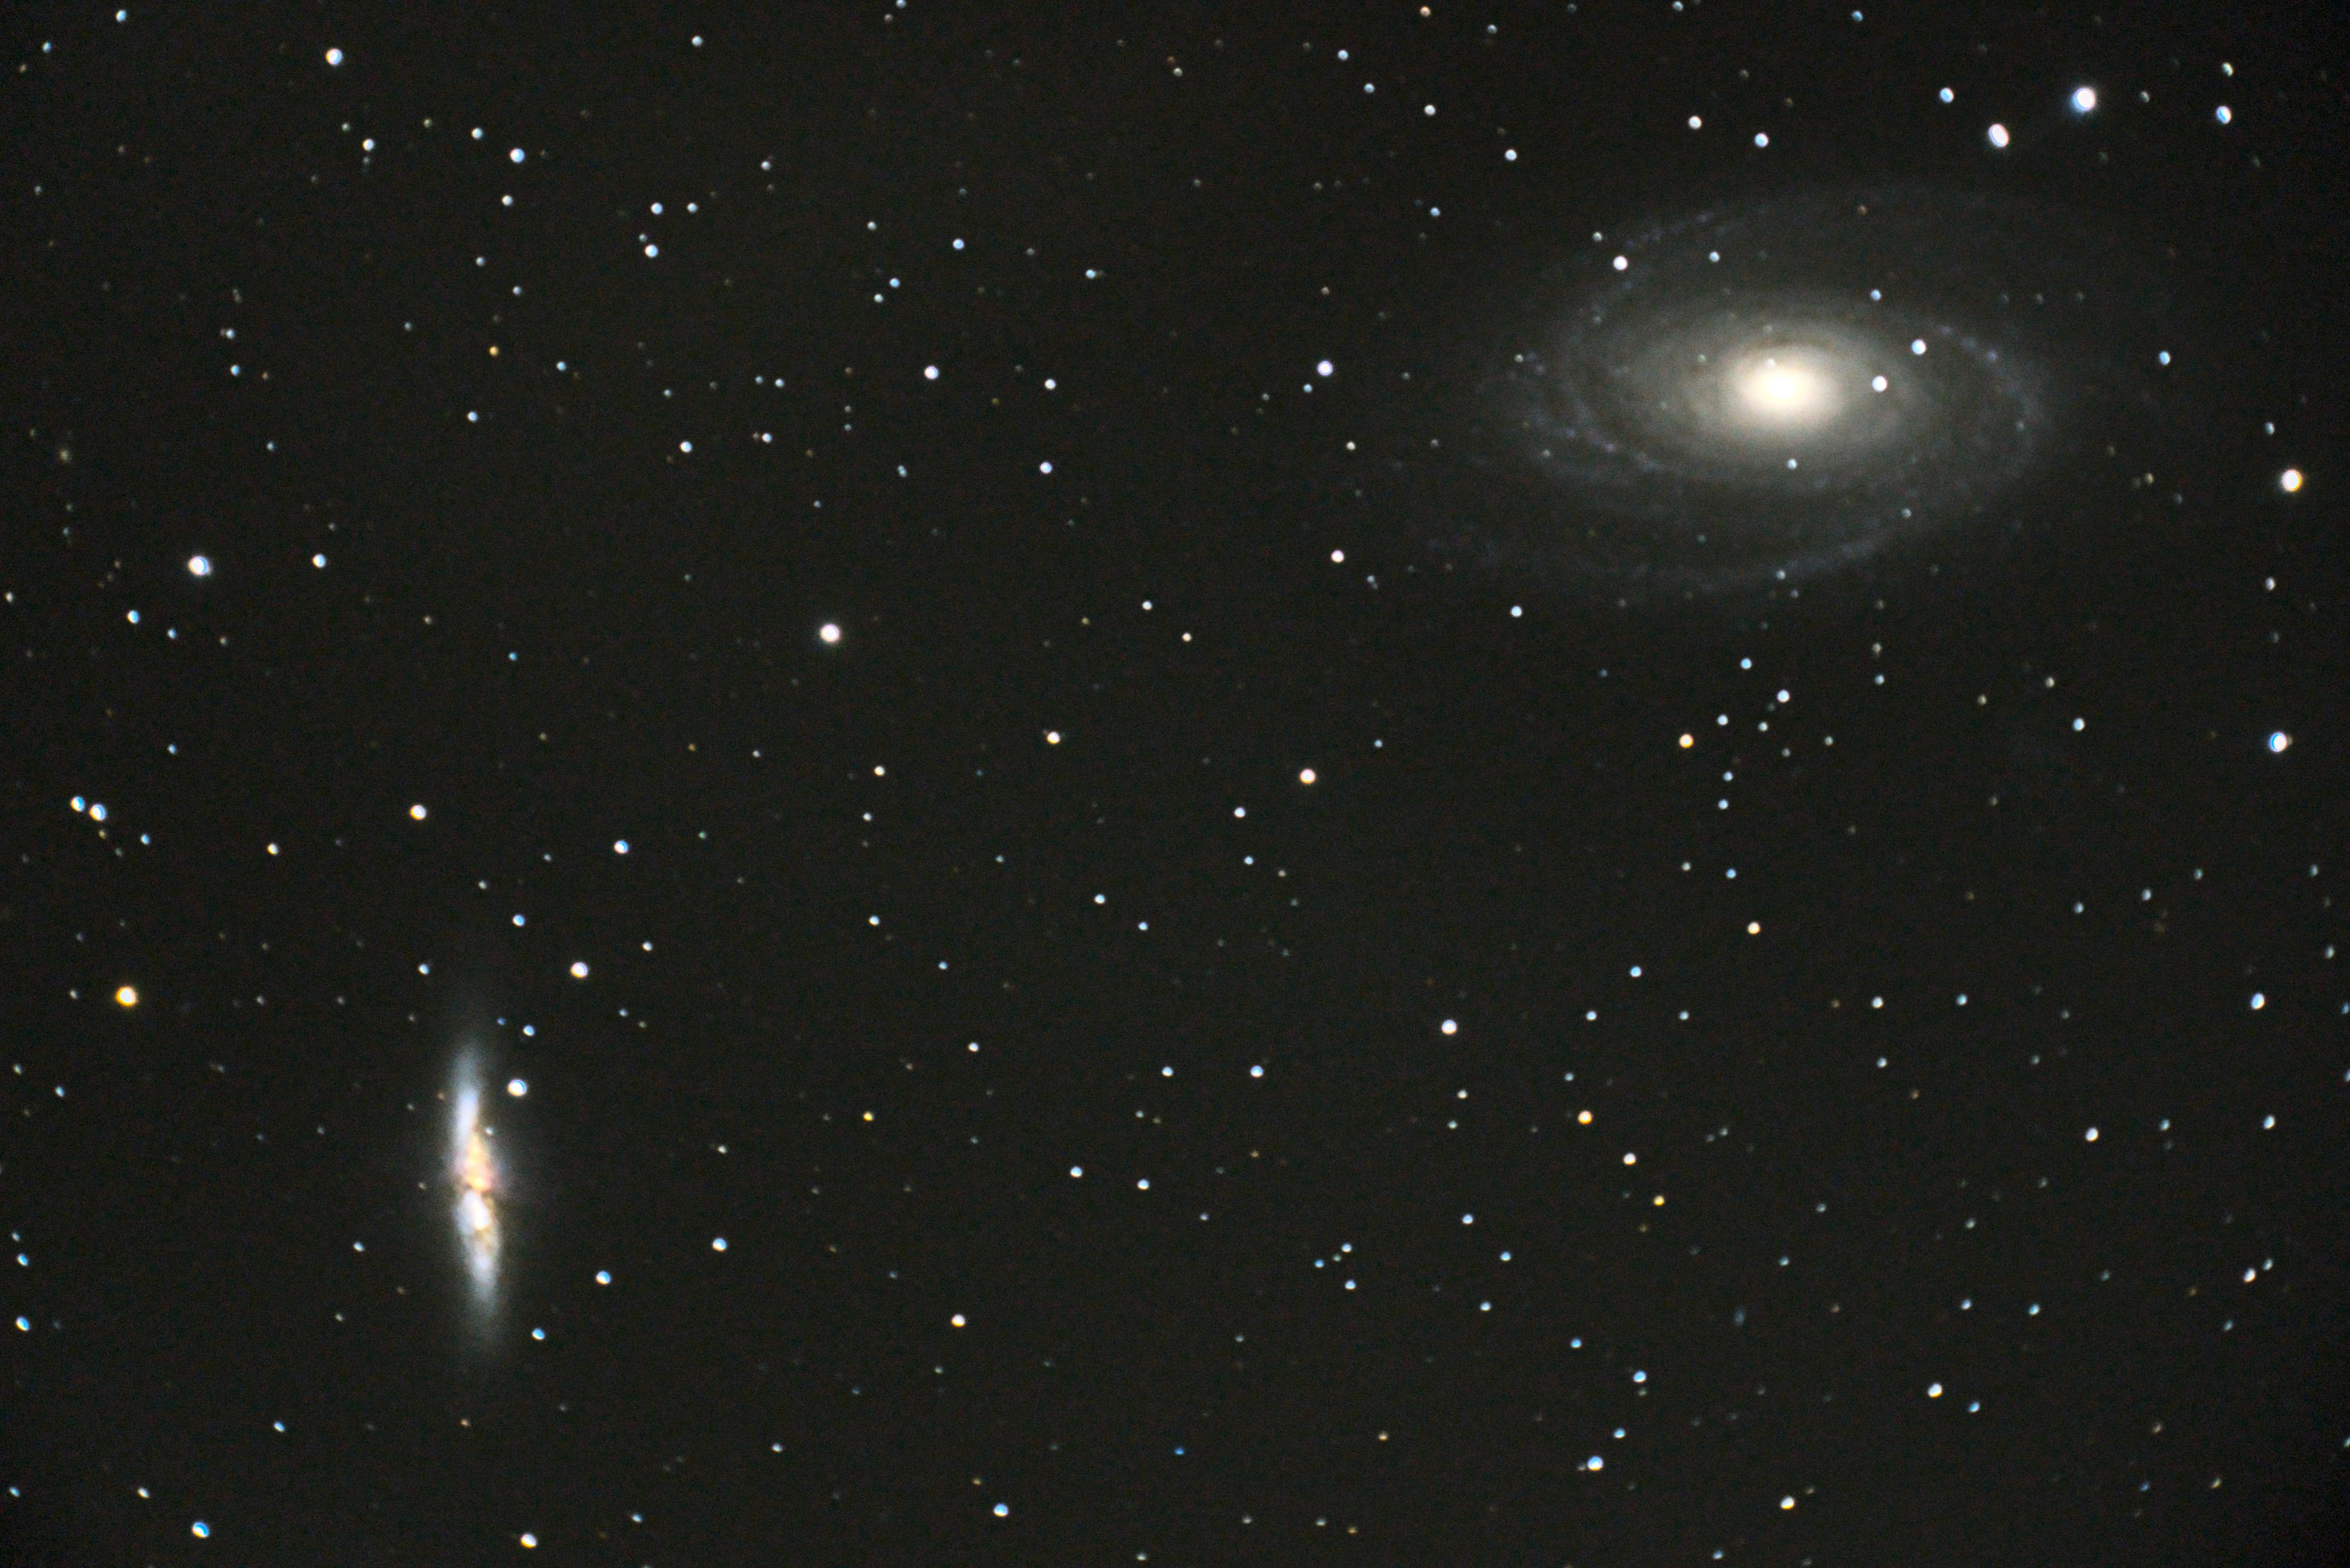 M81 + M82